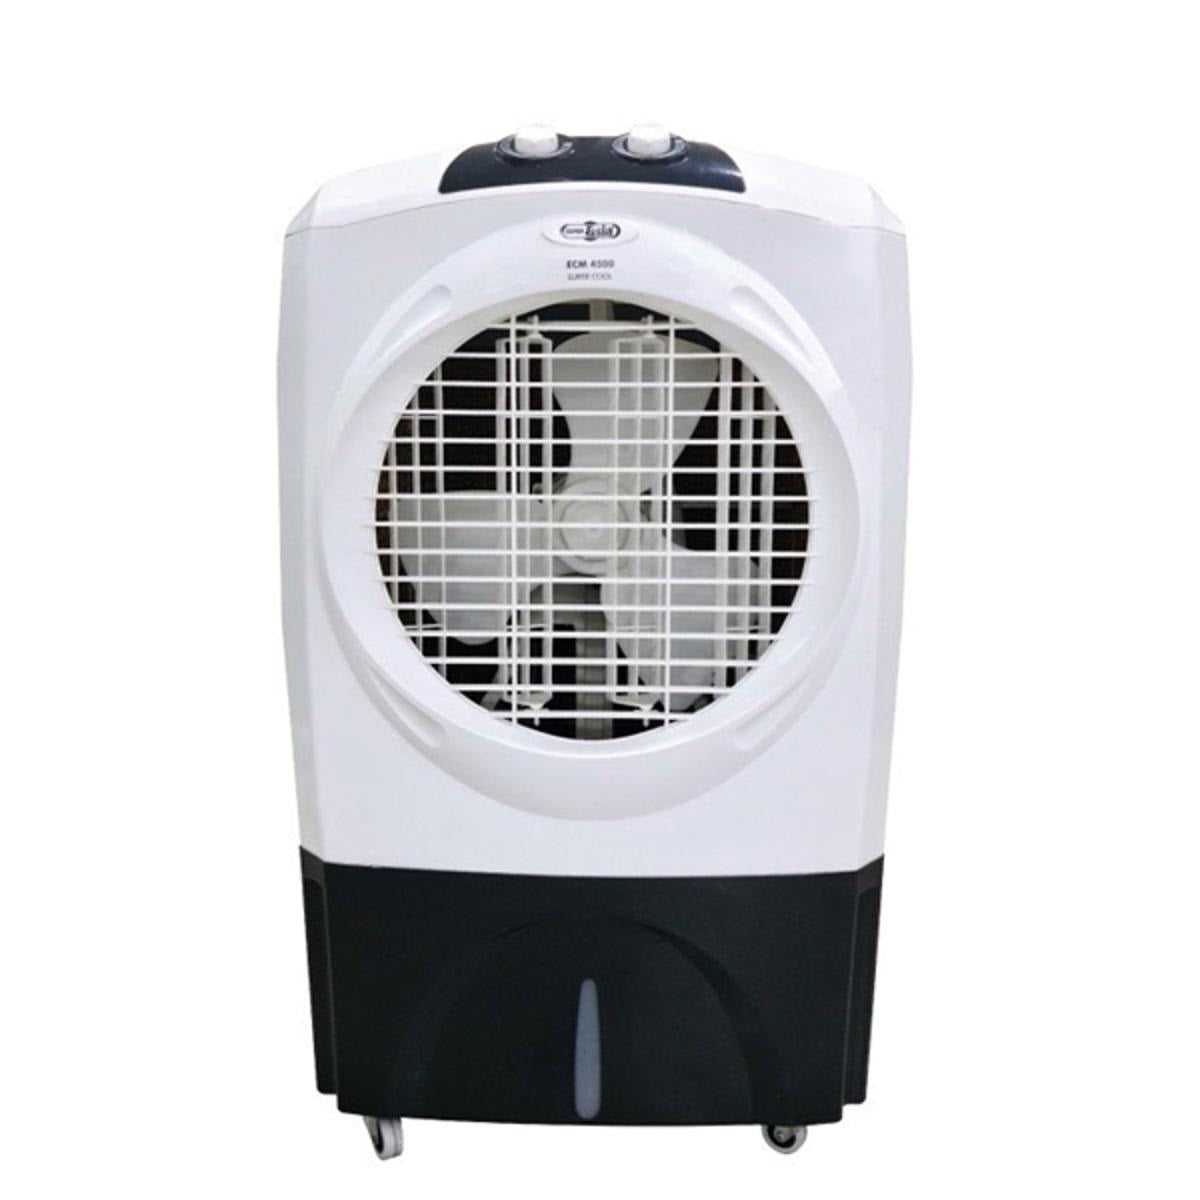 Super Asia Room Cooler - Inverter Series ECM-4500 Plus Inverter Super Cool